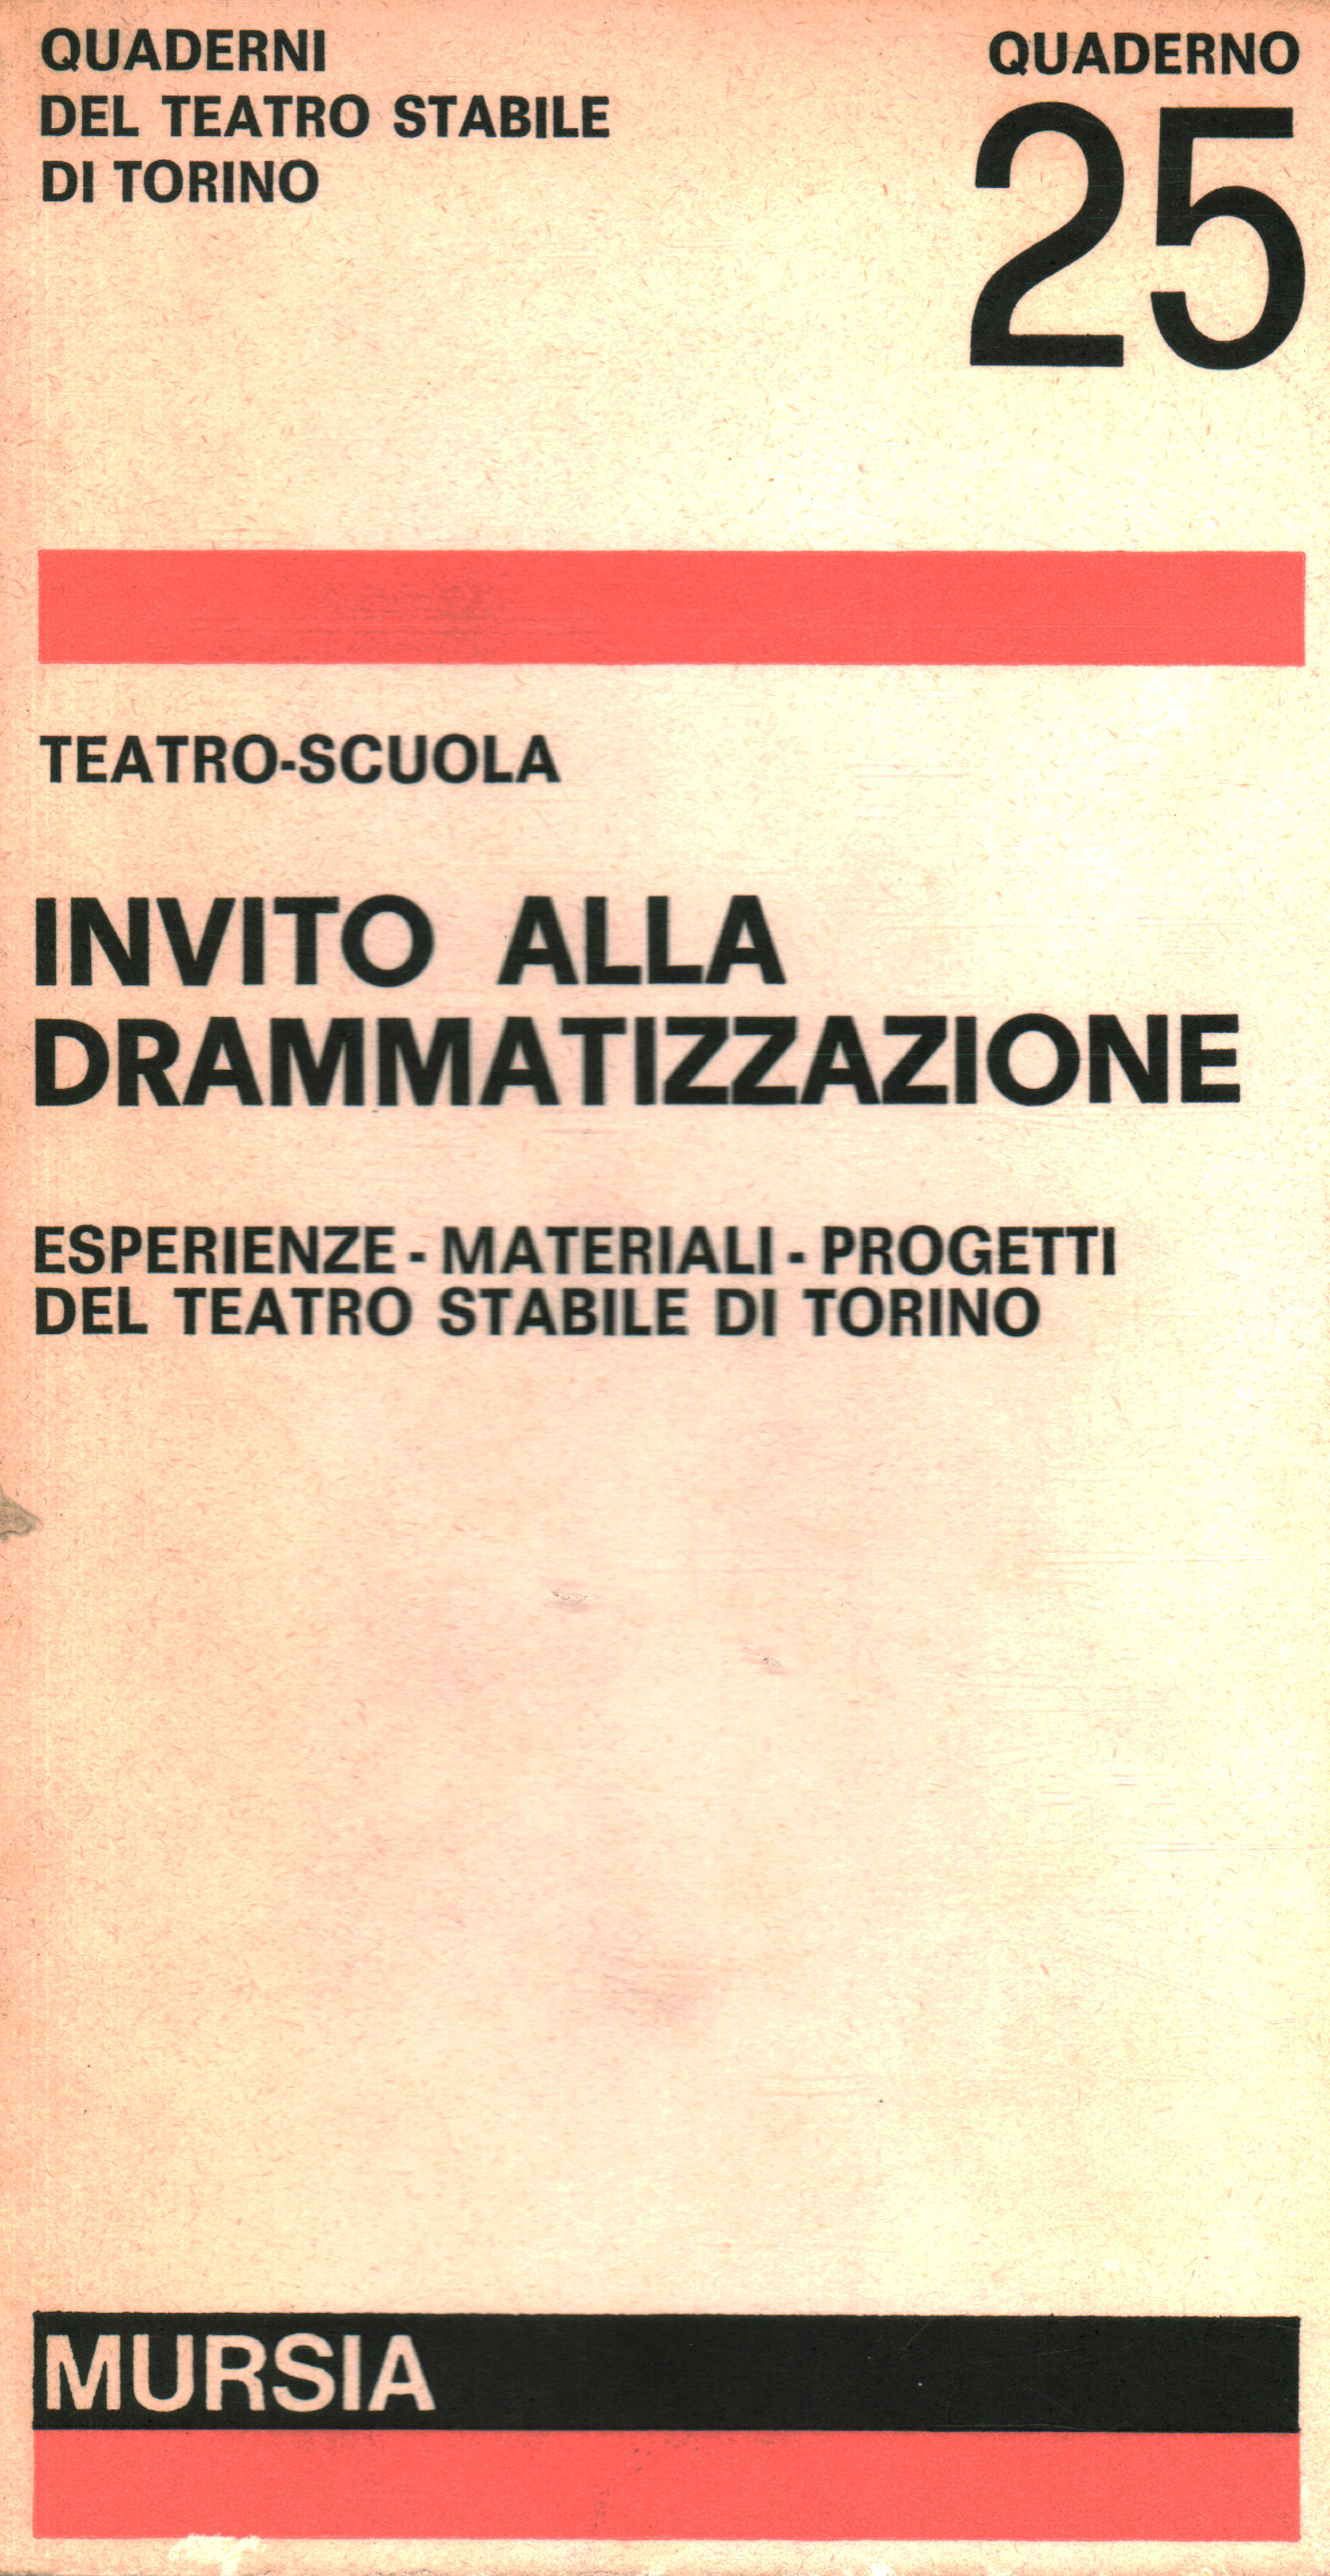 Invito alla drammatizzazione, Teatro-Scuola